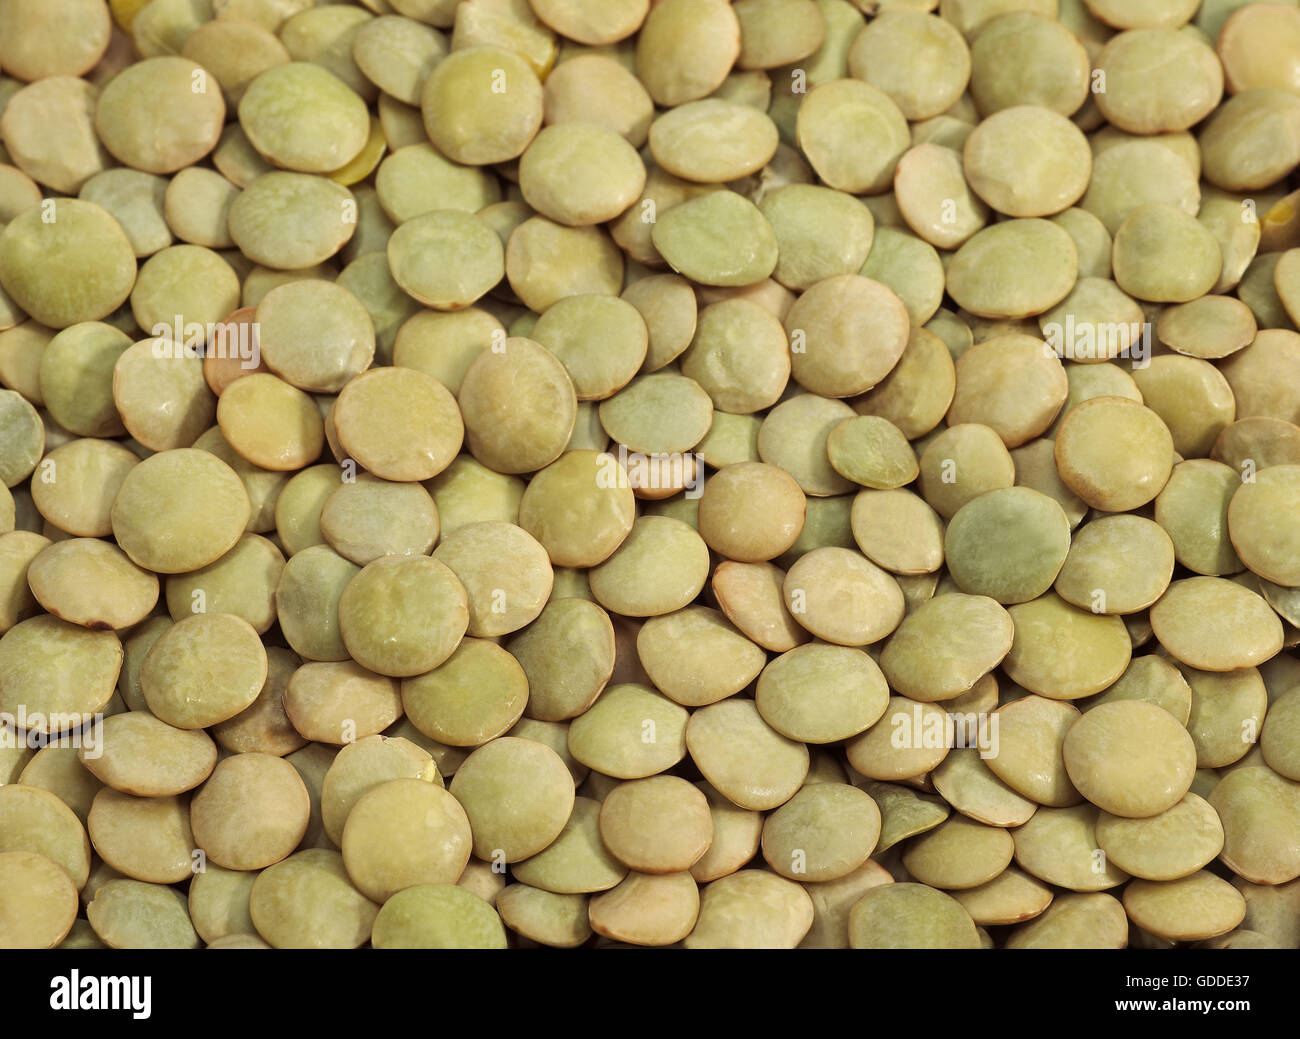 French Lentils called Saint Flour Blond Lentils, lens esculenta Stock Photo